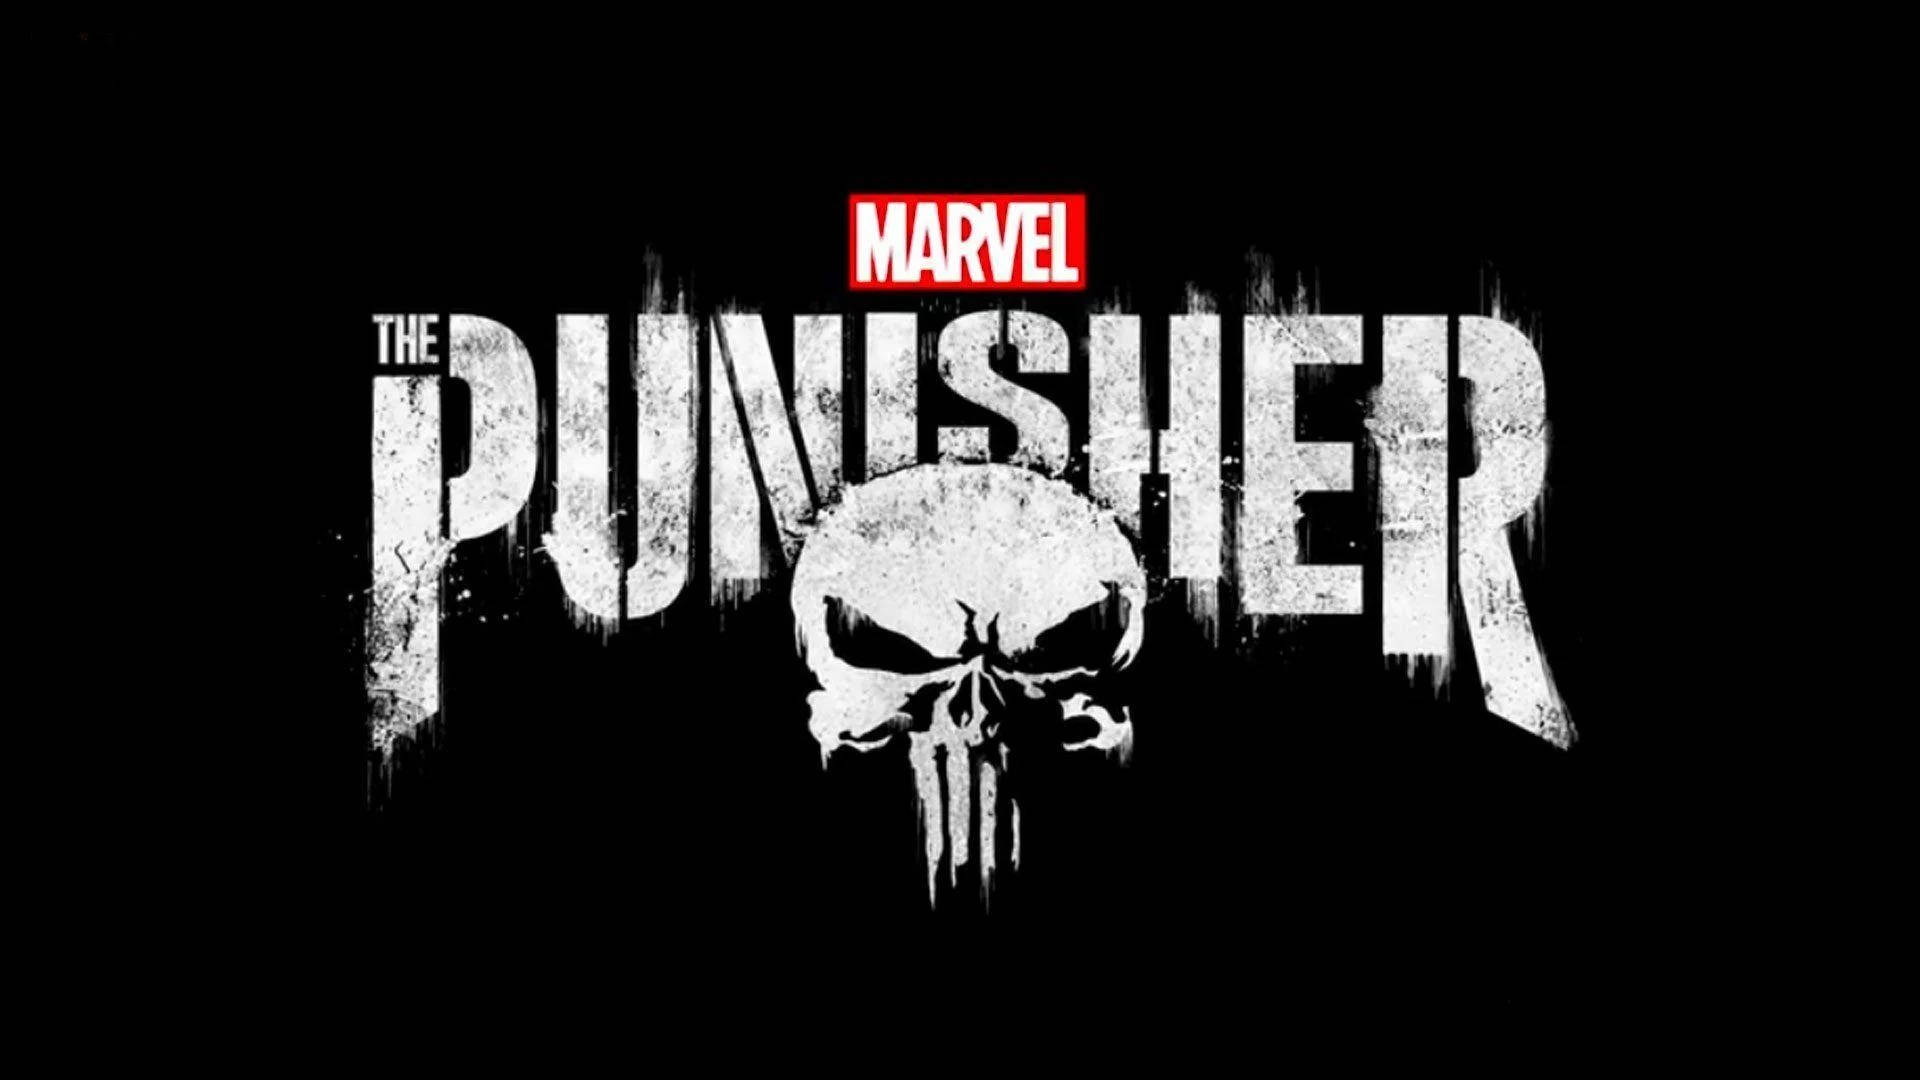 Marvel The Punisher Logo Background